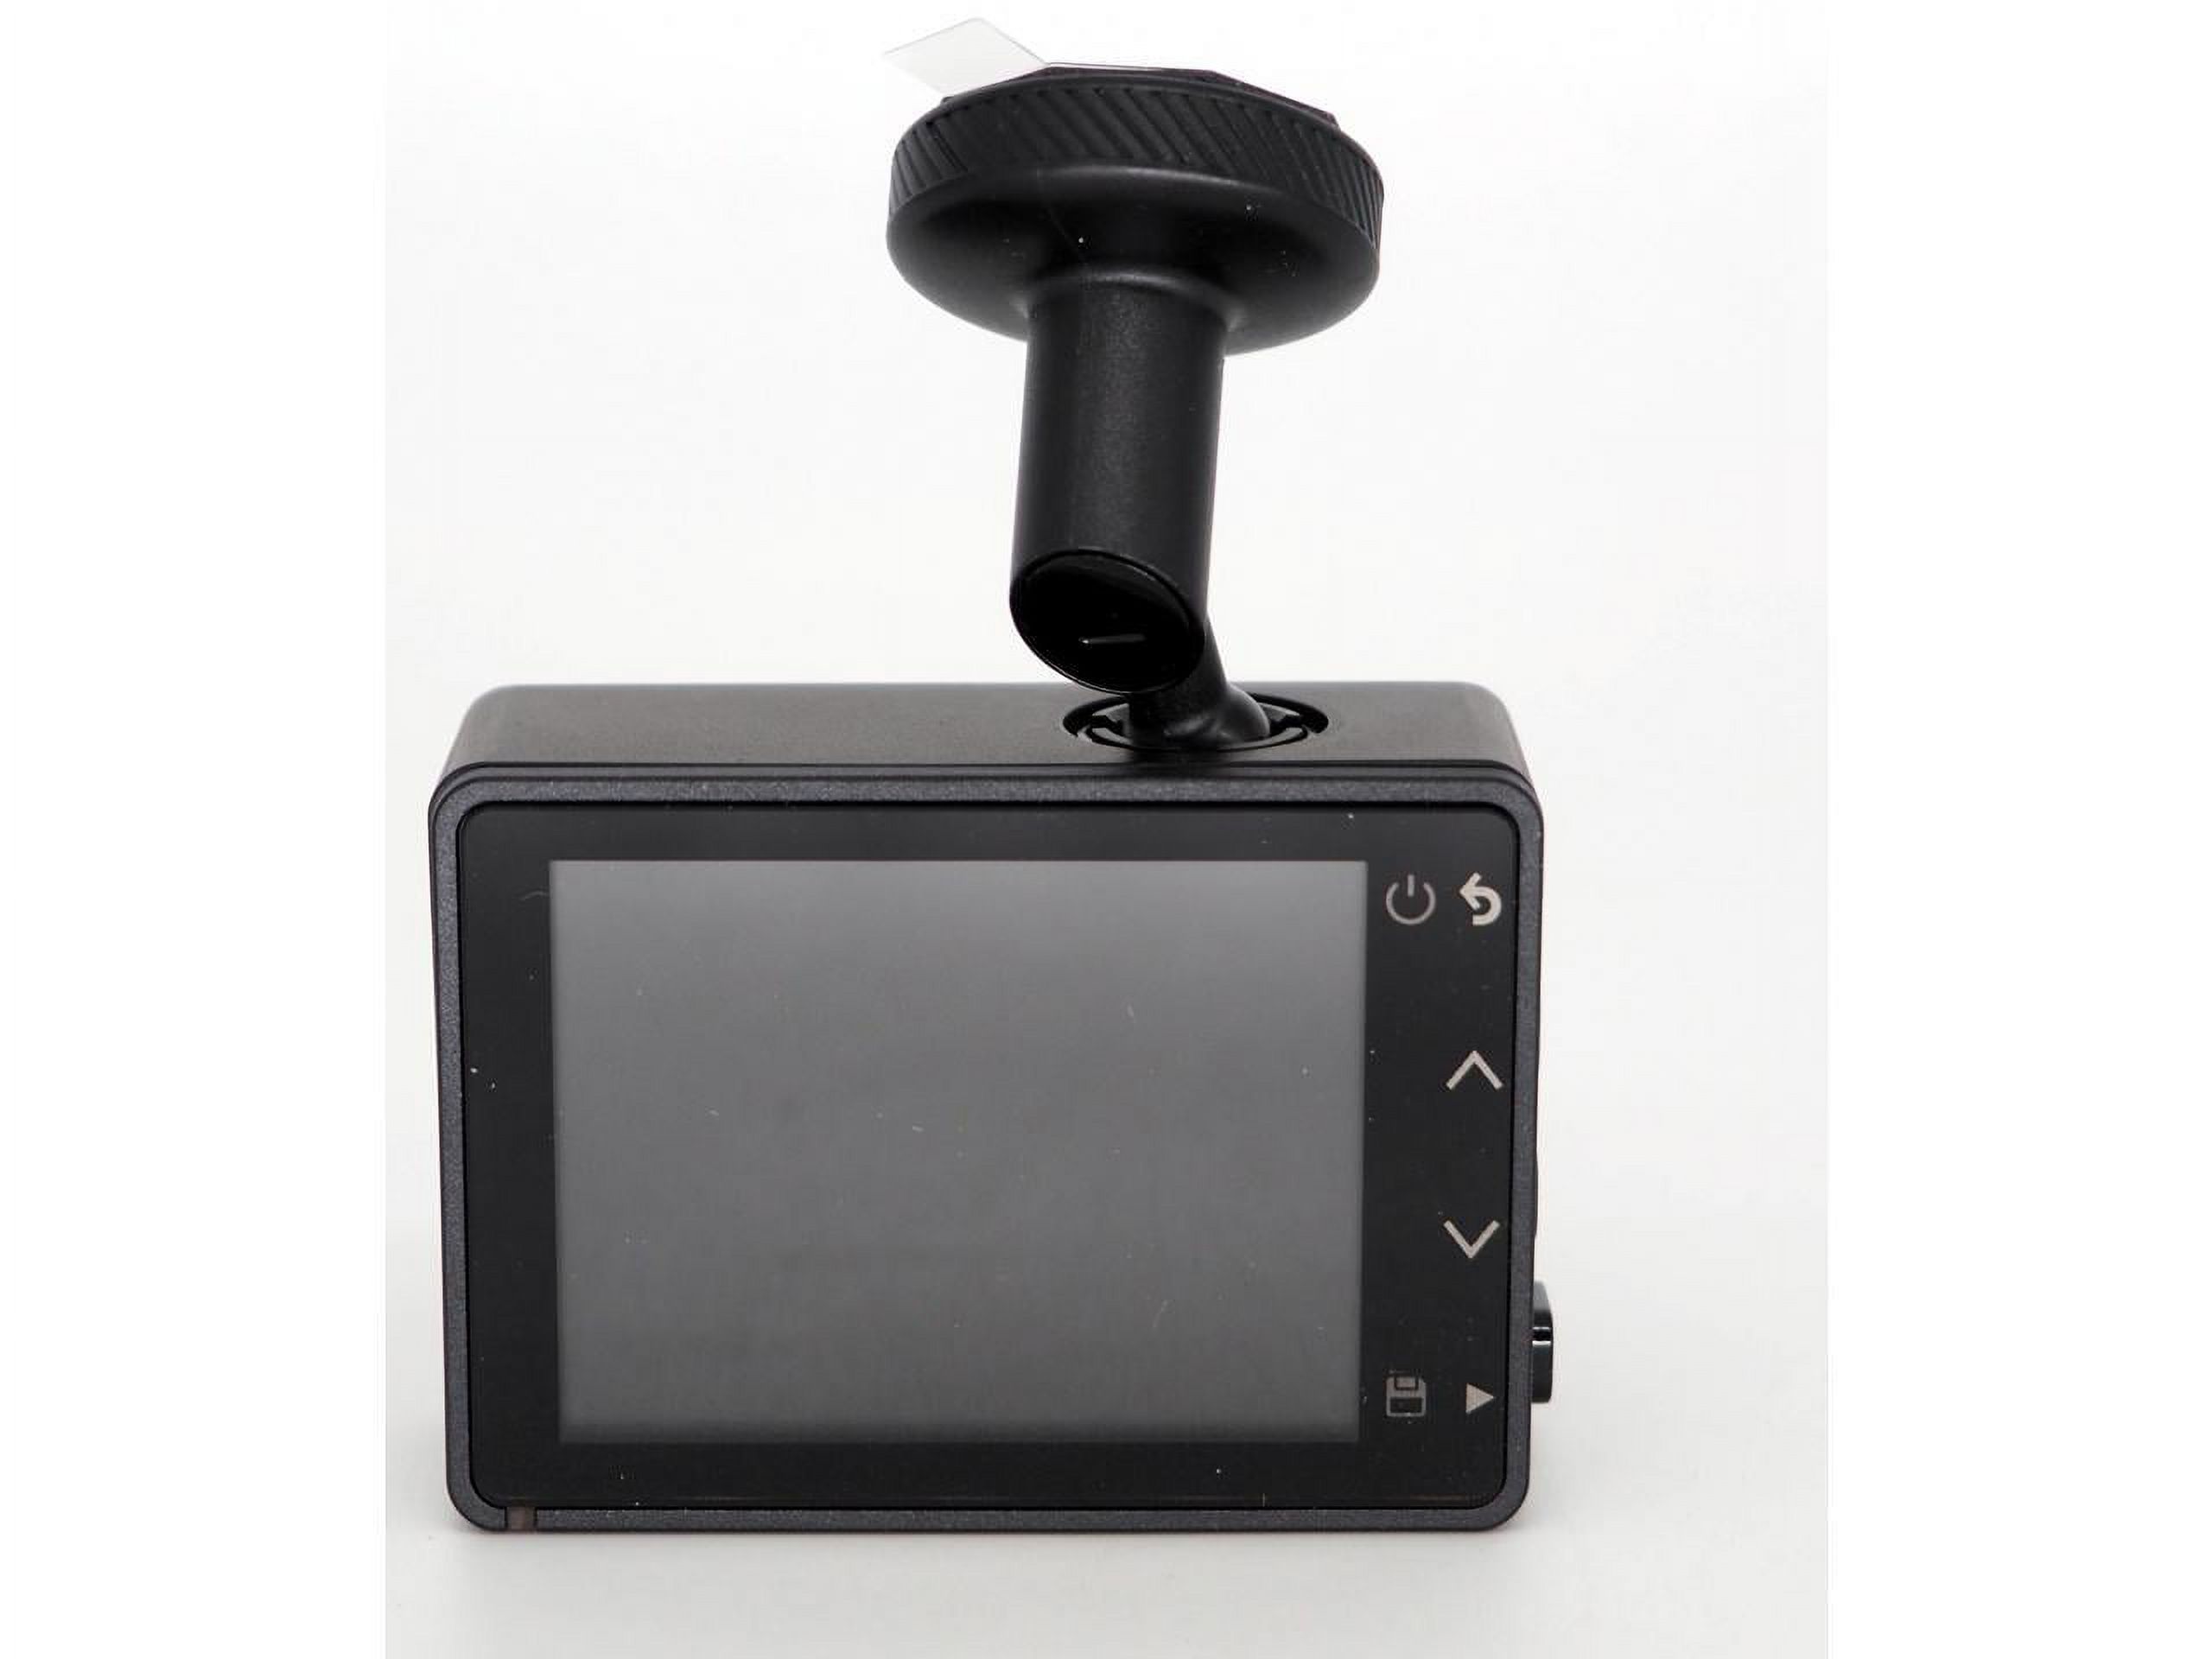 Garmin 47 1080p Dash Cam, Black #010-02505-00 - image 5 of 20